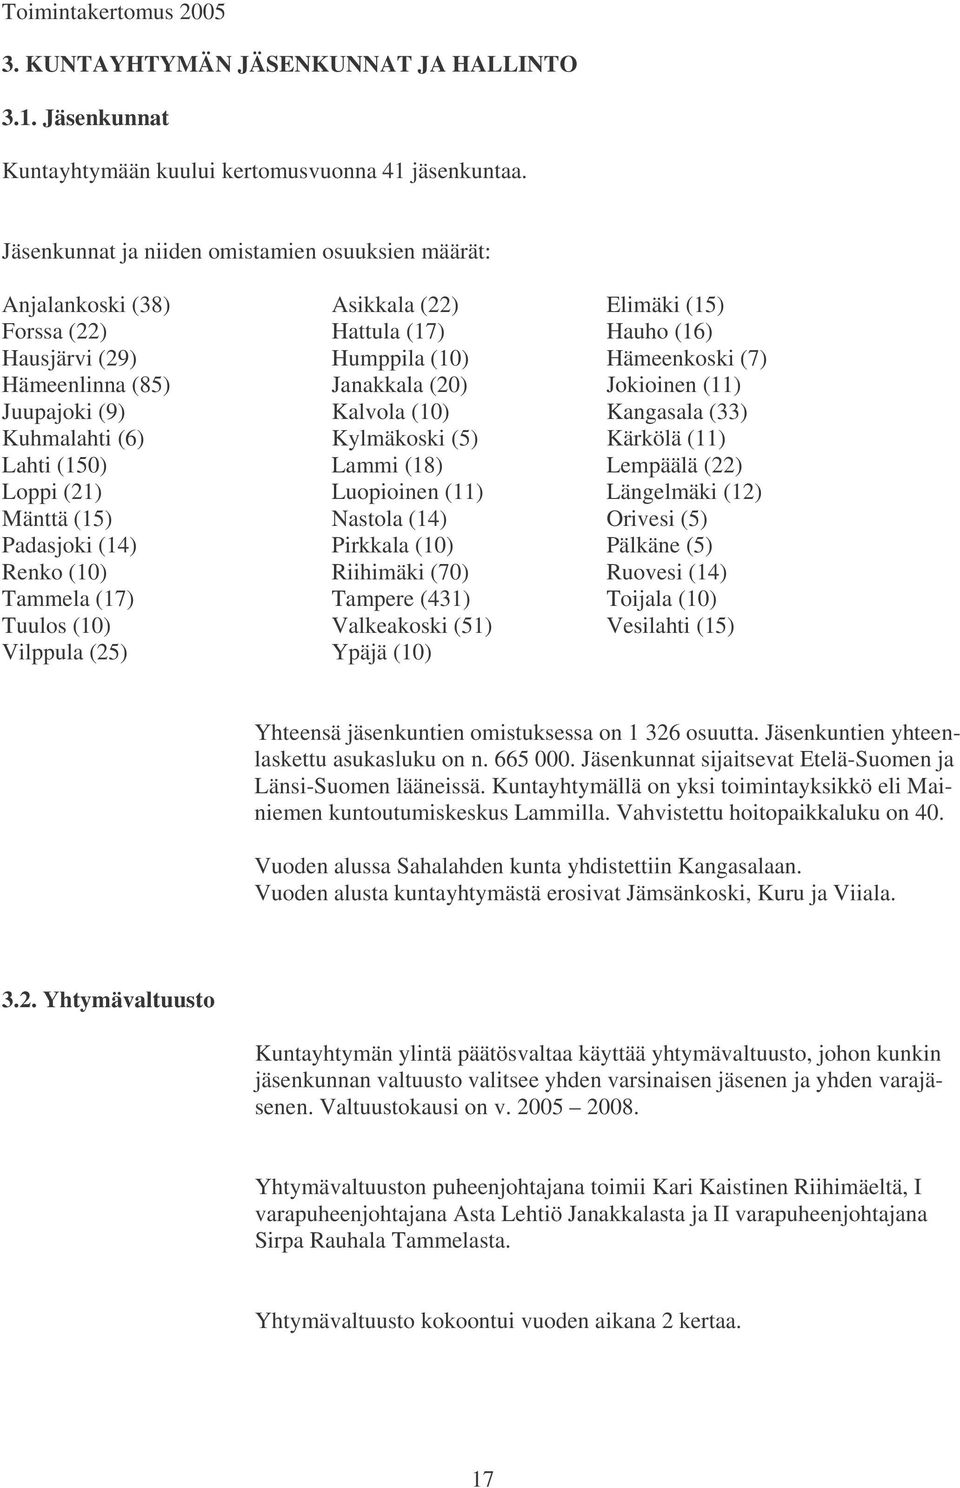 Janakkala (20) Jokioinen (11) Juupajoki (9) Kalvola (10) Kangasala (33) Kuhmalahti (6) Kylmäkoski (5) Kärkölä (11) Lahti (150) Lammi (18) Lempäälä (22) Loppi (21) Luopioinen (11) Längelmäki (12)